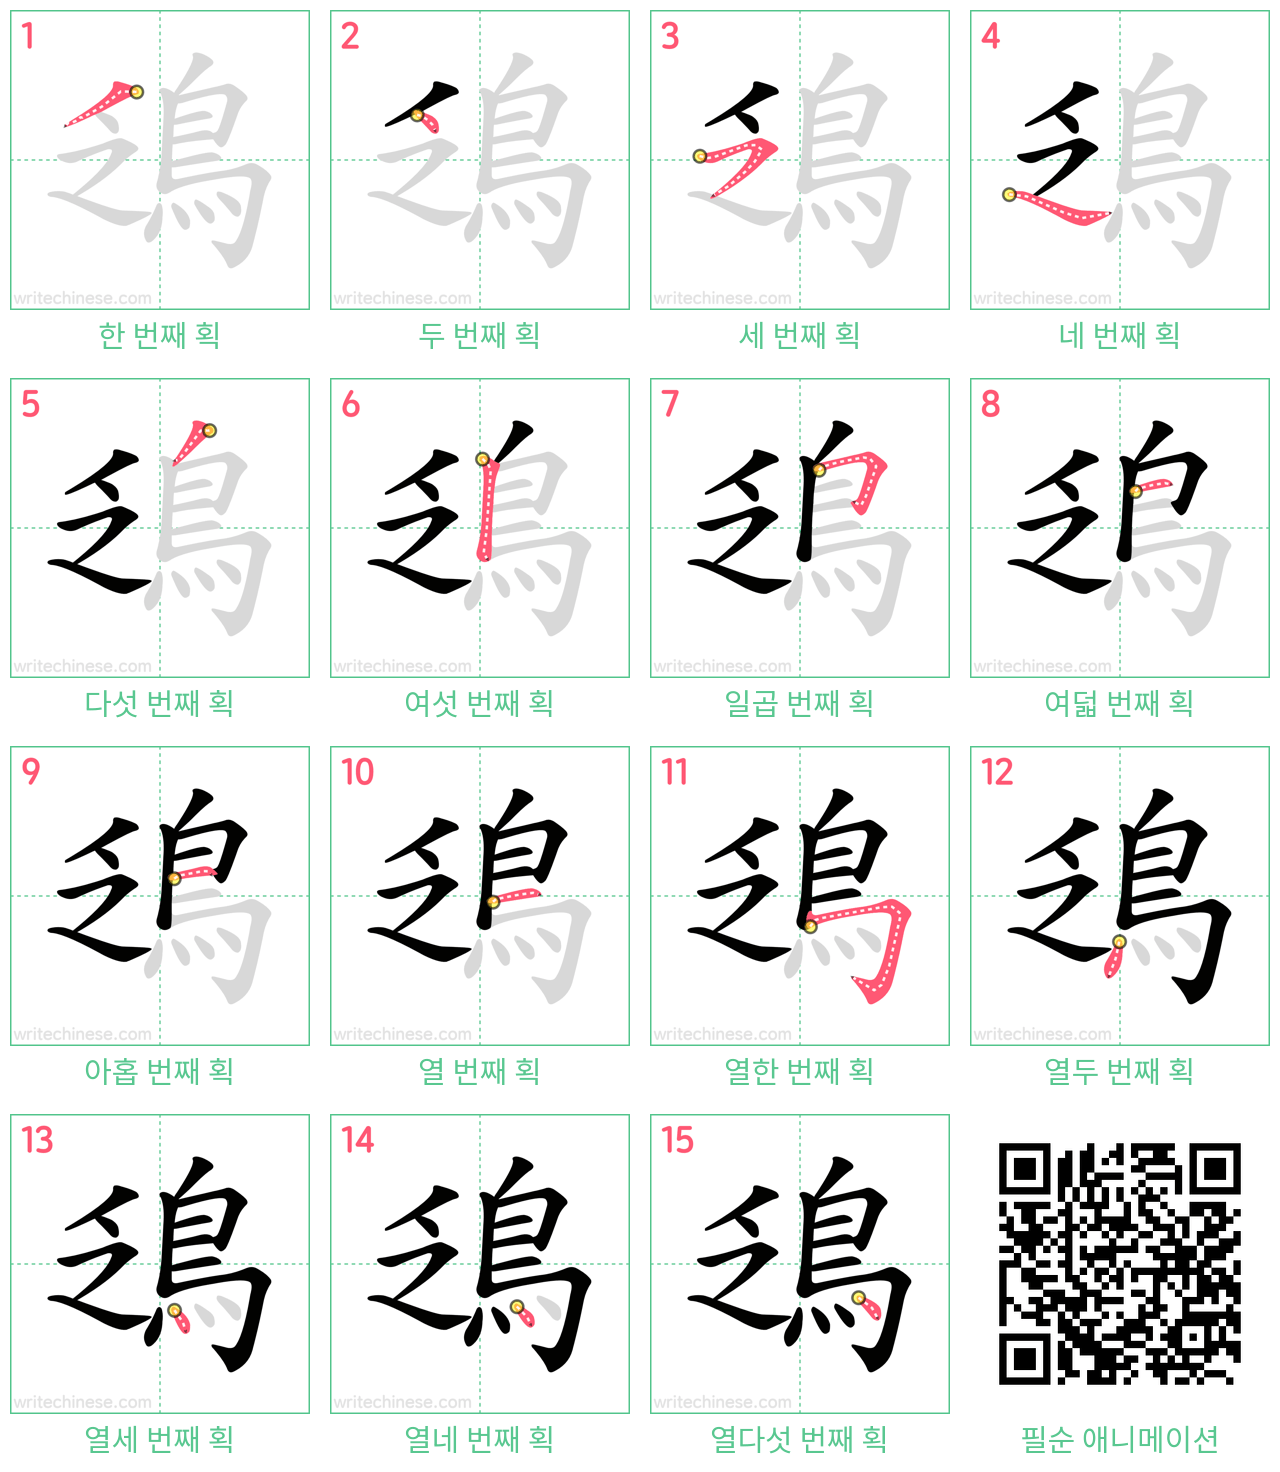 鴔 step-by-step stroke order diagrams